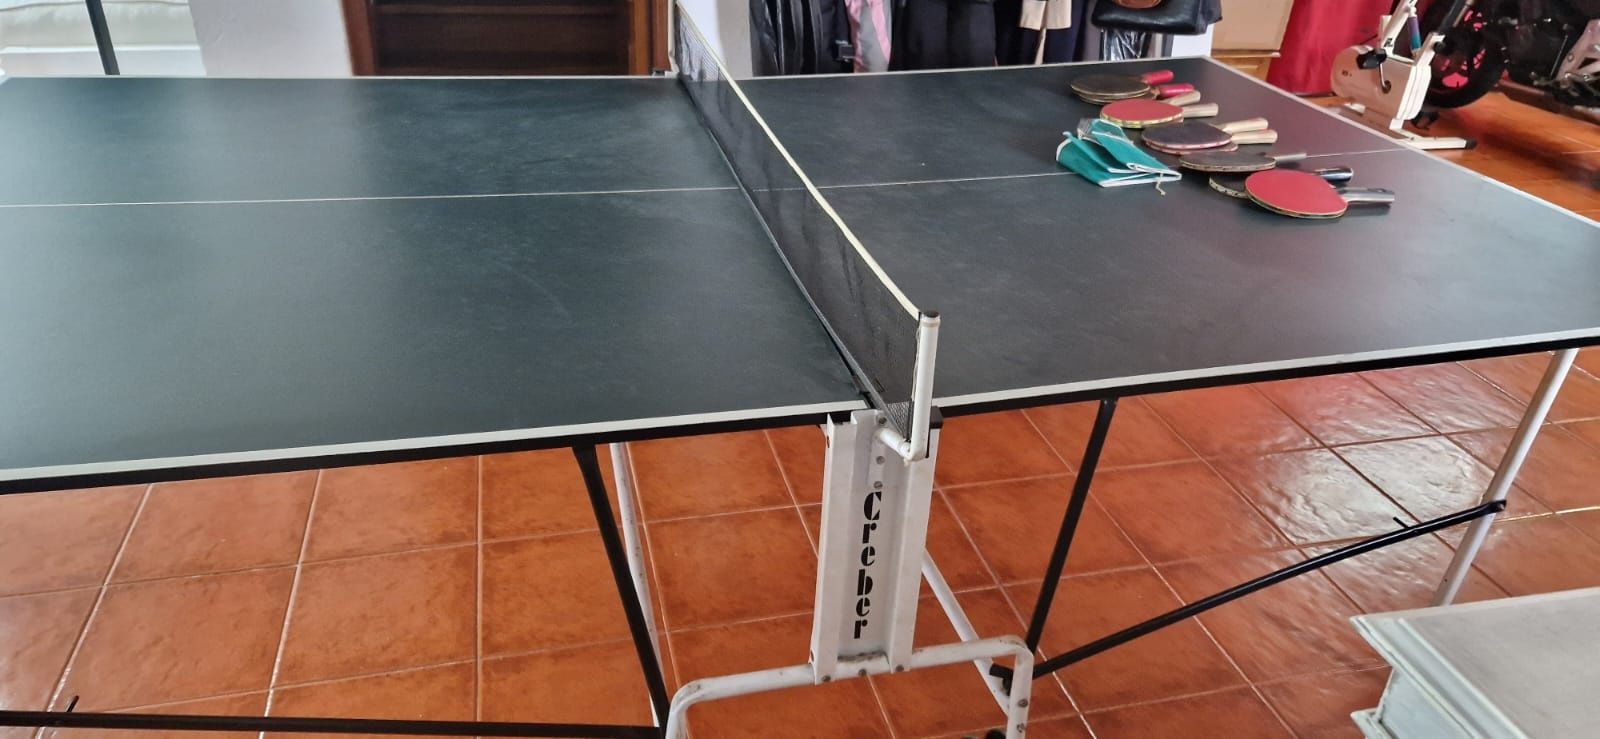 Mesa de ping pong com várias raquetes